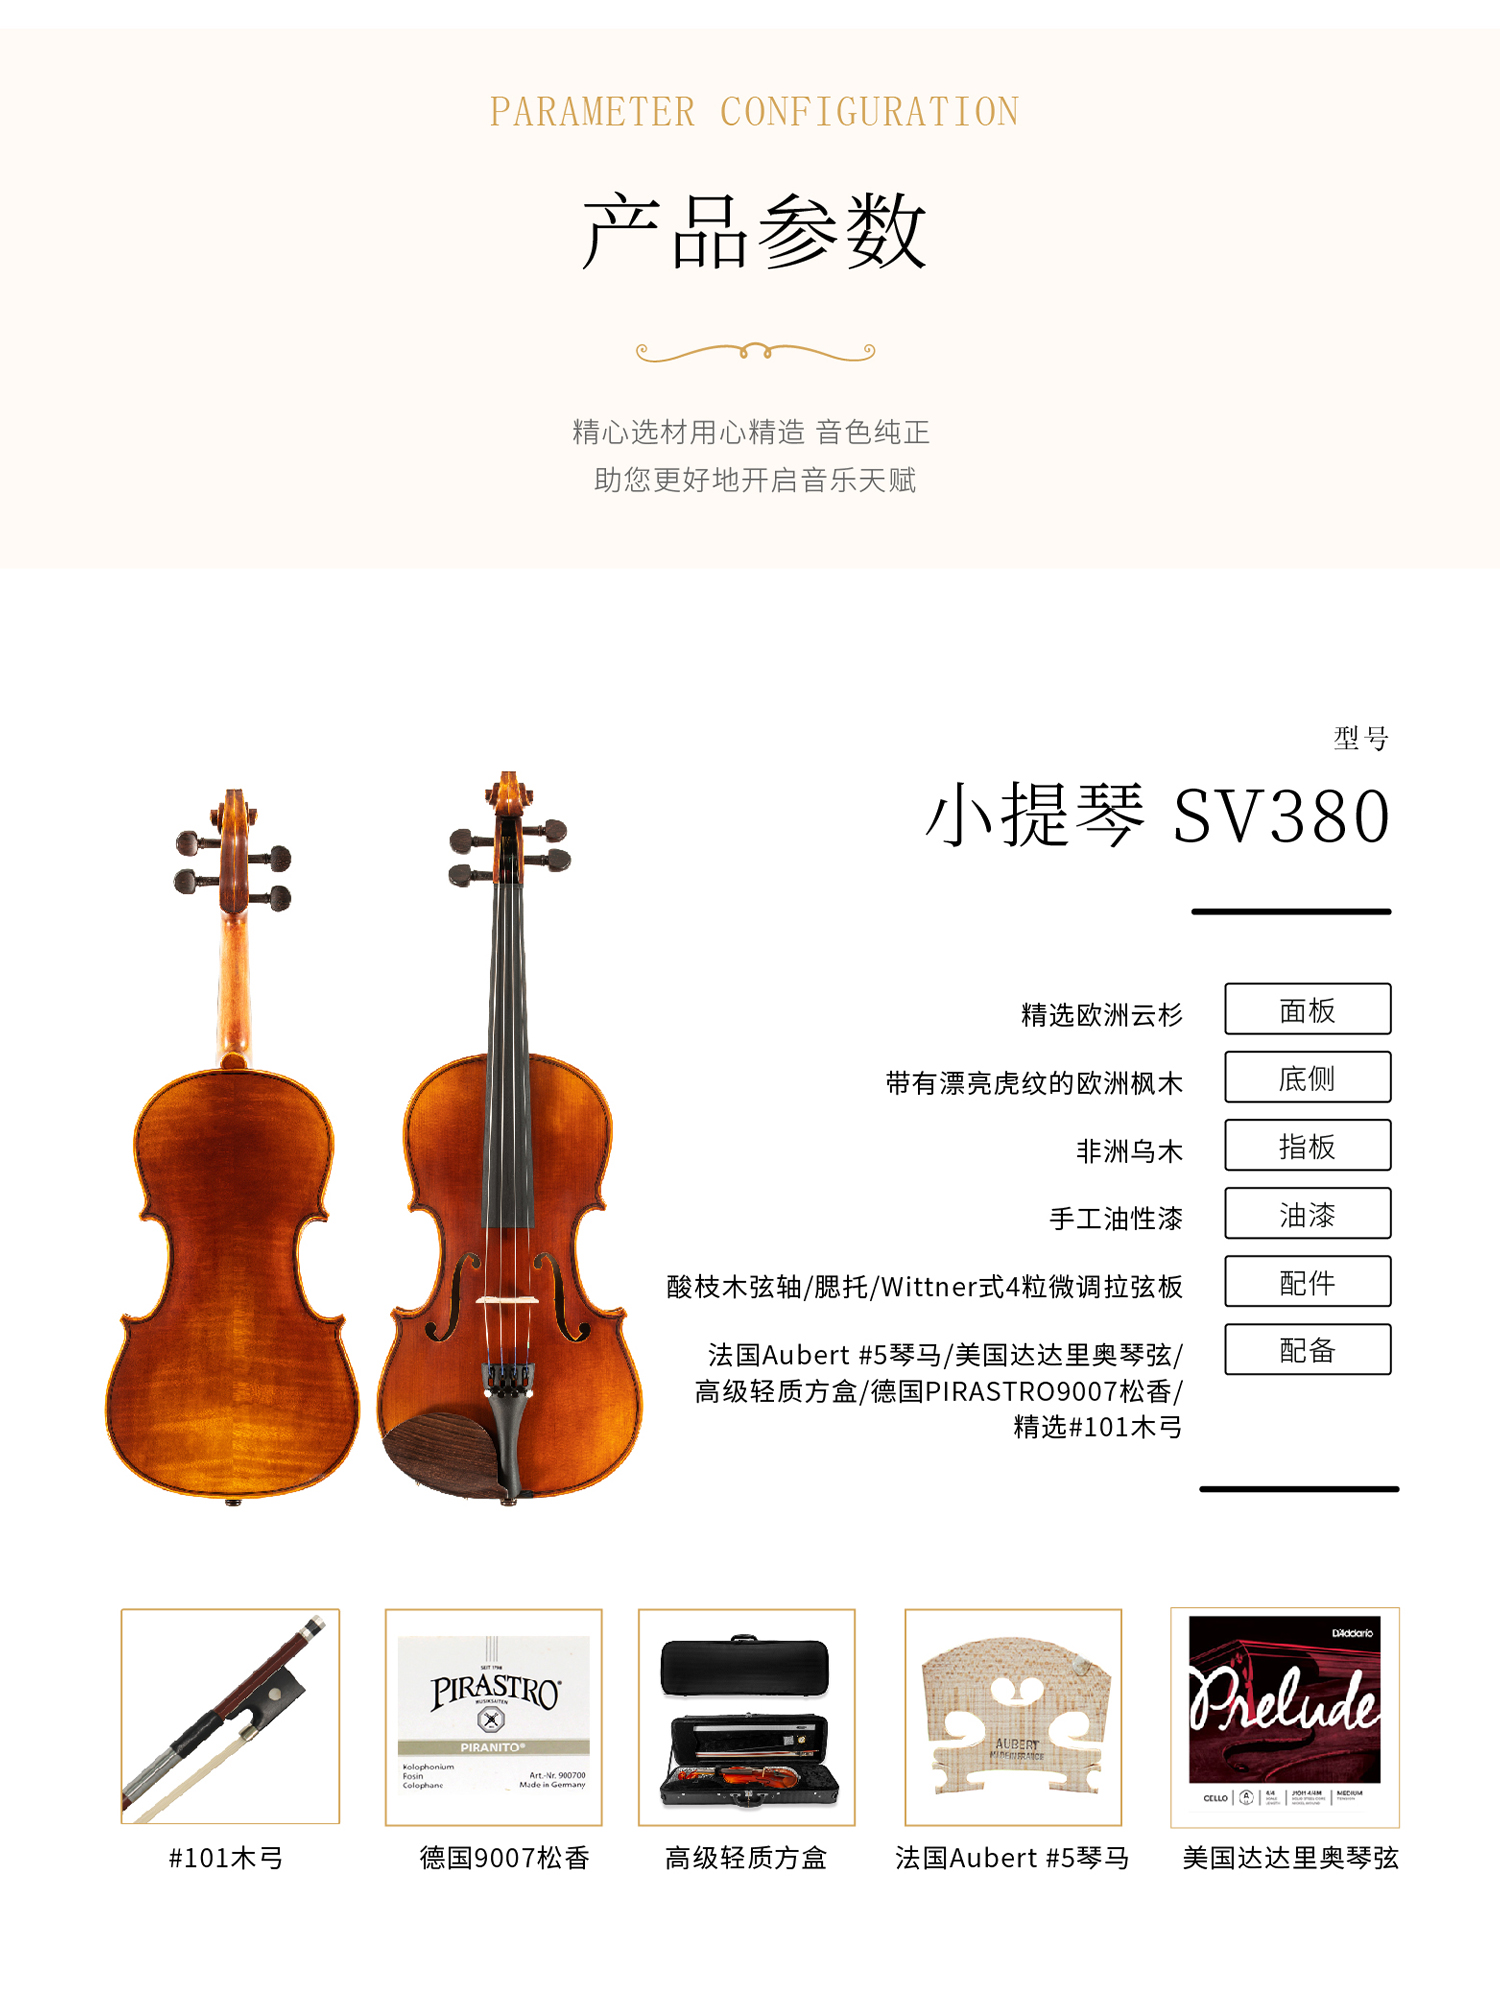 熙珑乐器专营店-详情-v1-2_SV380小提琴_复制_PC-副本-2_PC-副本-2_03.jpg